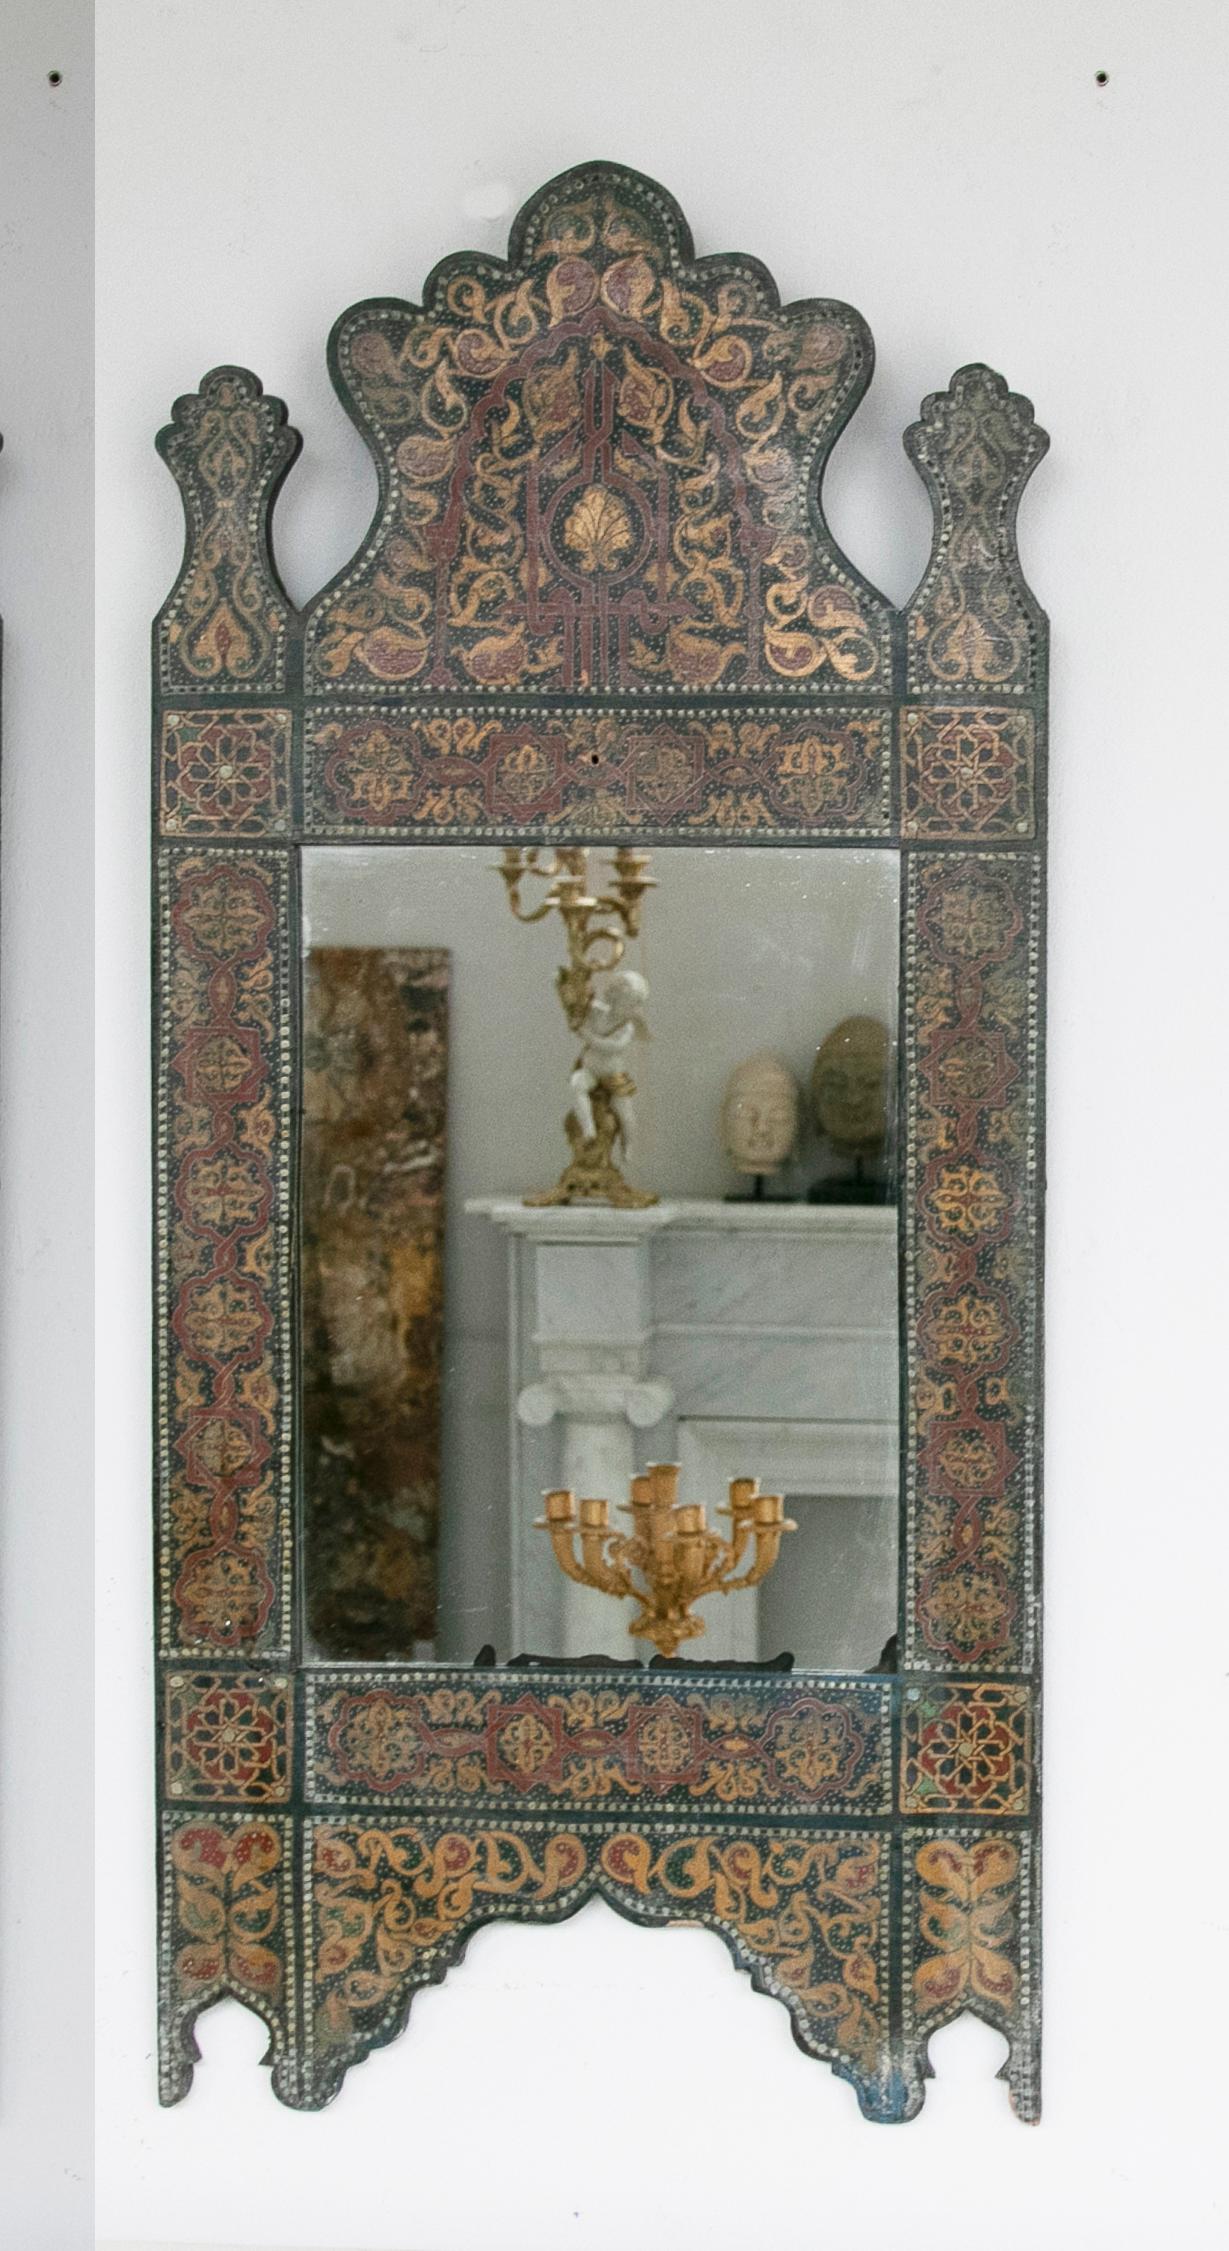 Paar handbemalte Holzspiegel im marokkanischen Stil aus den 1990er Jahren mit arabischen Verzierungen. Es hat eine rötliche Patina.